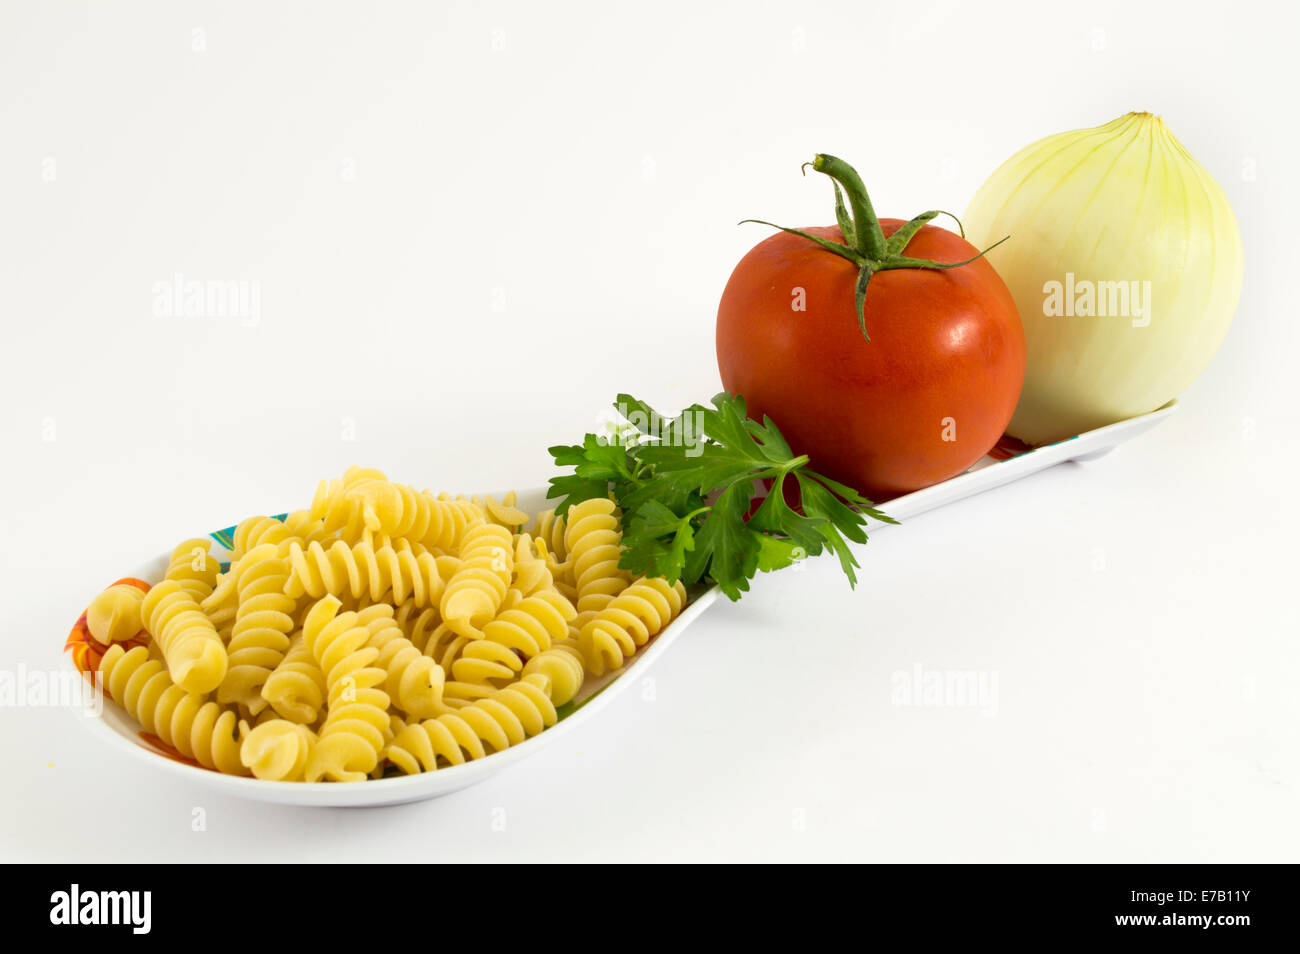 onion, tomato, parsley pasta on white background Stock Photo